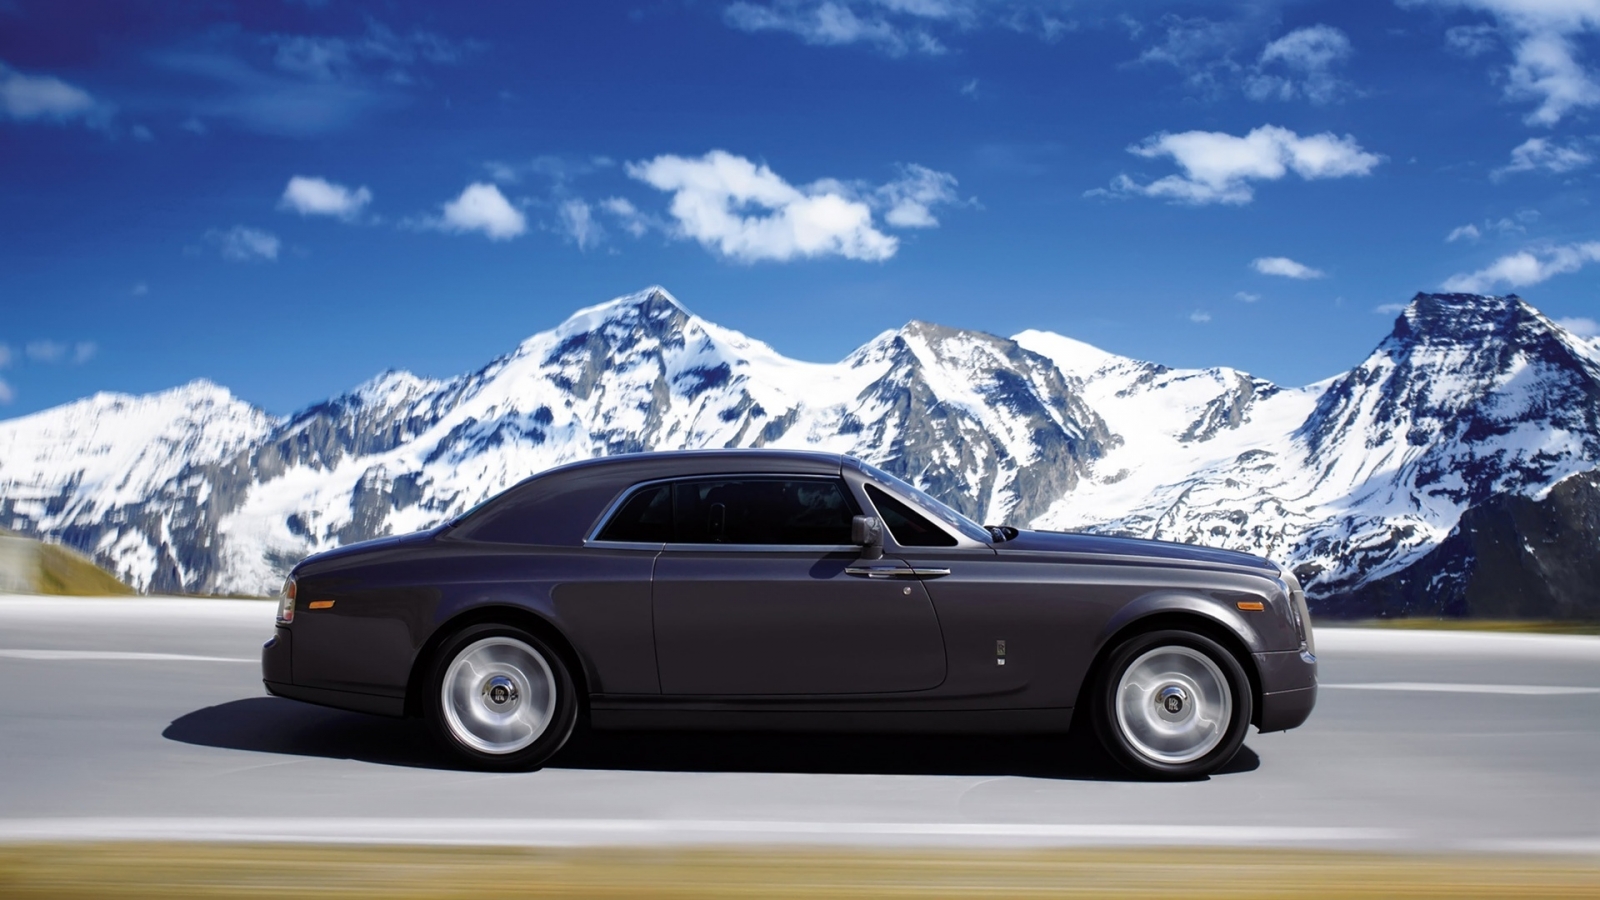 Rolls Royce Phantom Coupe 2010 for 1600 x 900 HDTV resolution